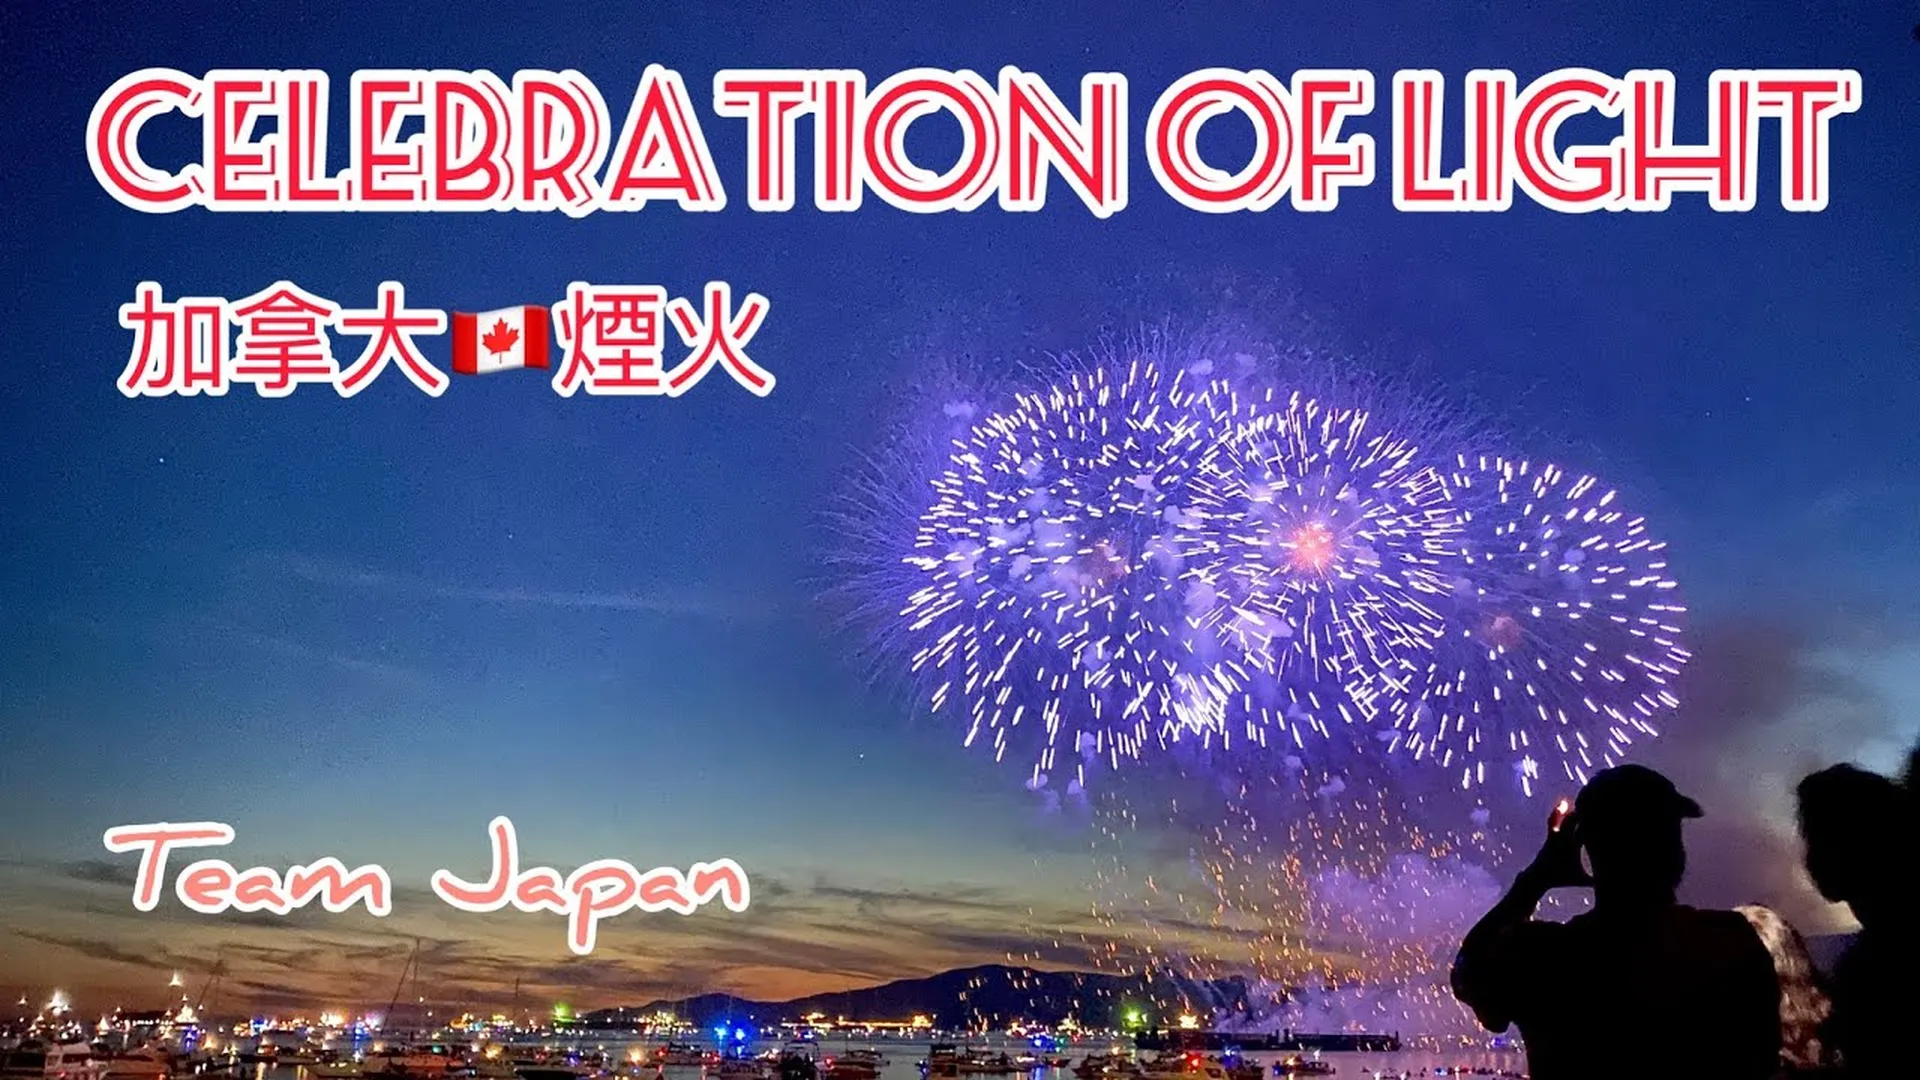 2022 加拿大溫哥華夏季煙火秀 Honda Celebration of Light 2022 - 日本隊 Japan Akariya Fireworks 灯屋煙火店